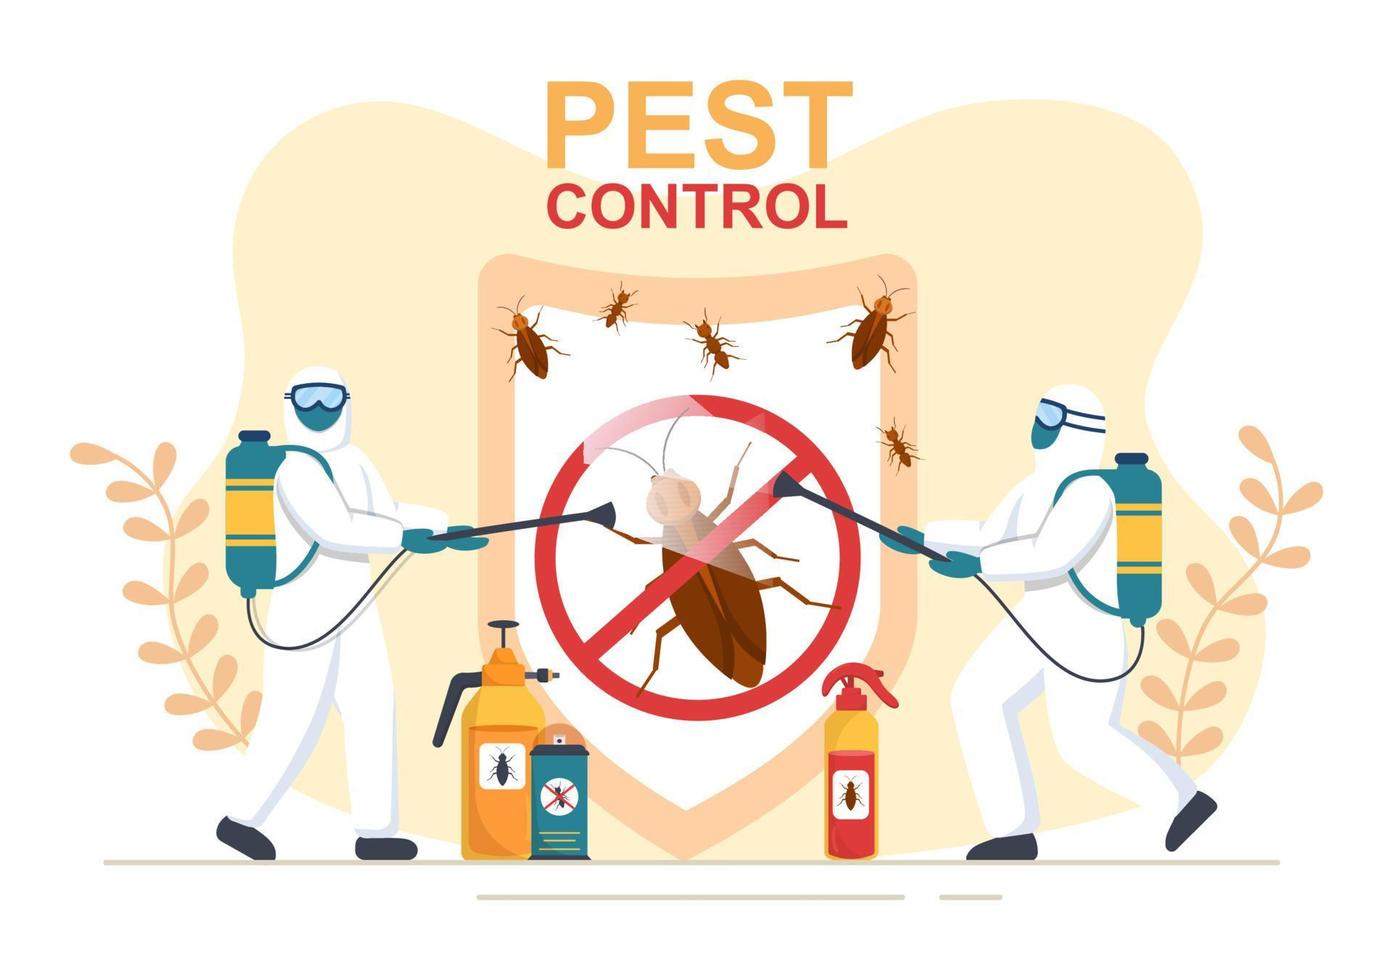 servicio de control de plagas con exterminador de insectos, aerosoles y desinfección higiénica de la casa en ilustración de fondo de caricatura plana vector